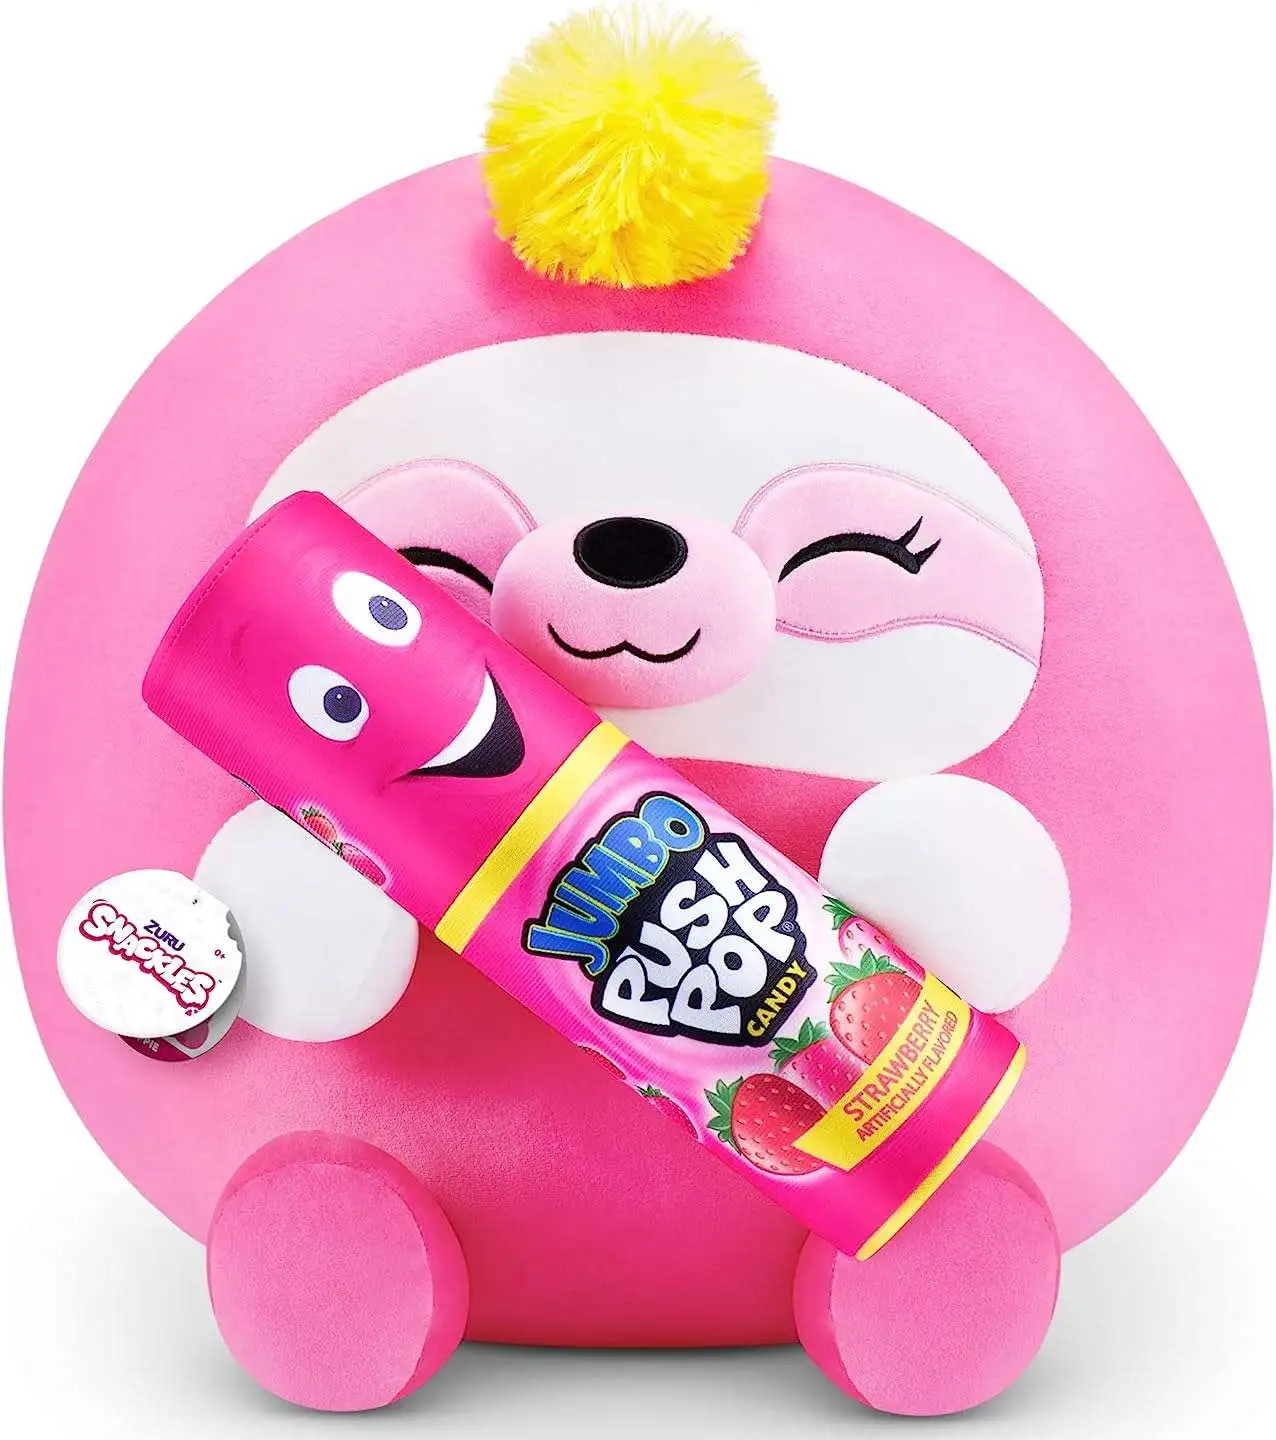 New Surprise Doll Zuru Snackles Super Soft Plush Snack Brand Cute